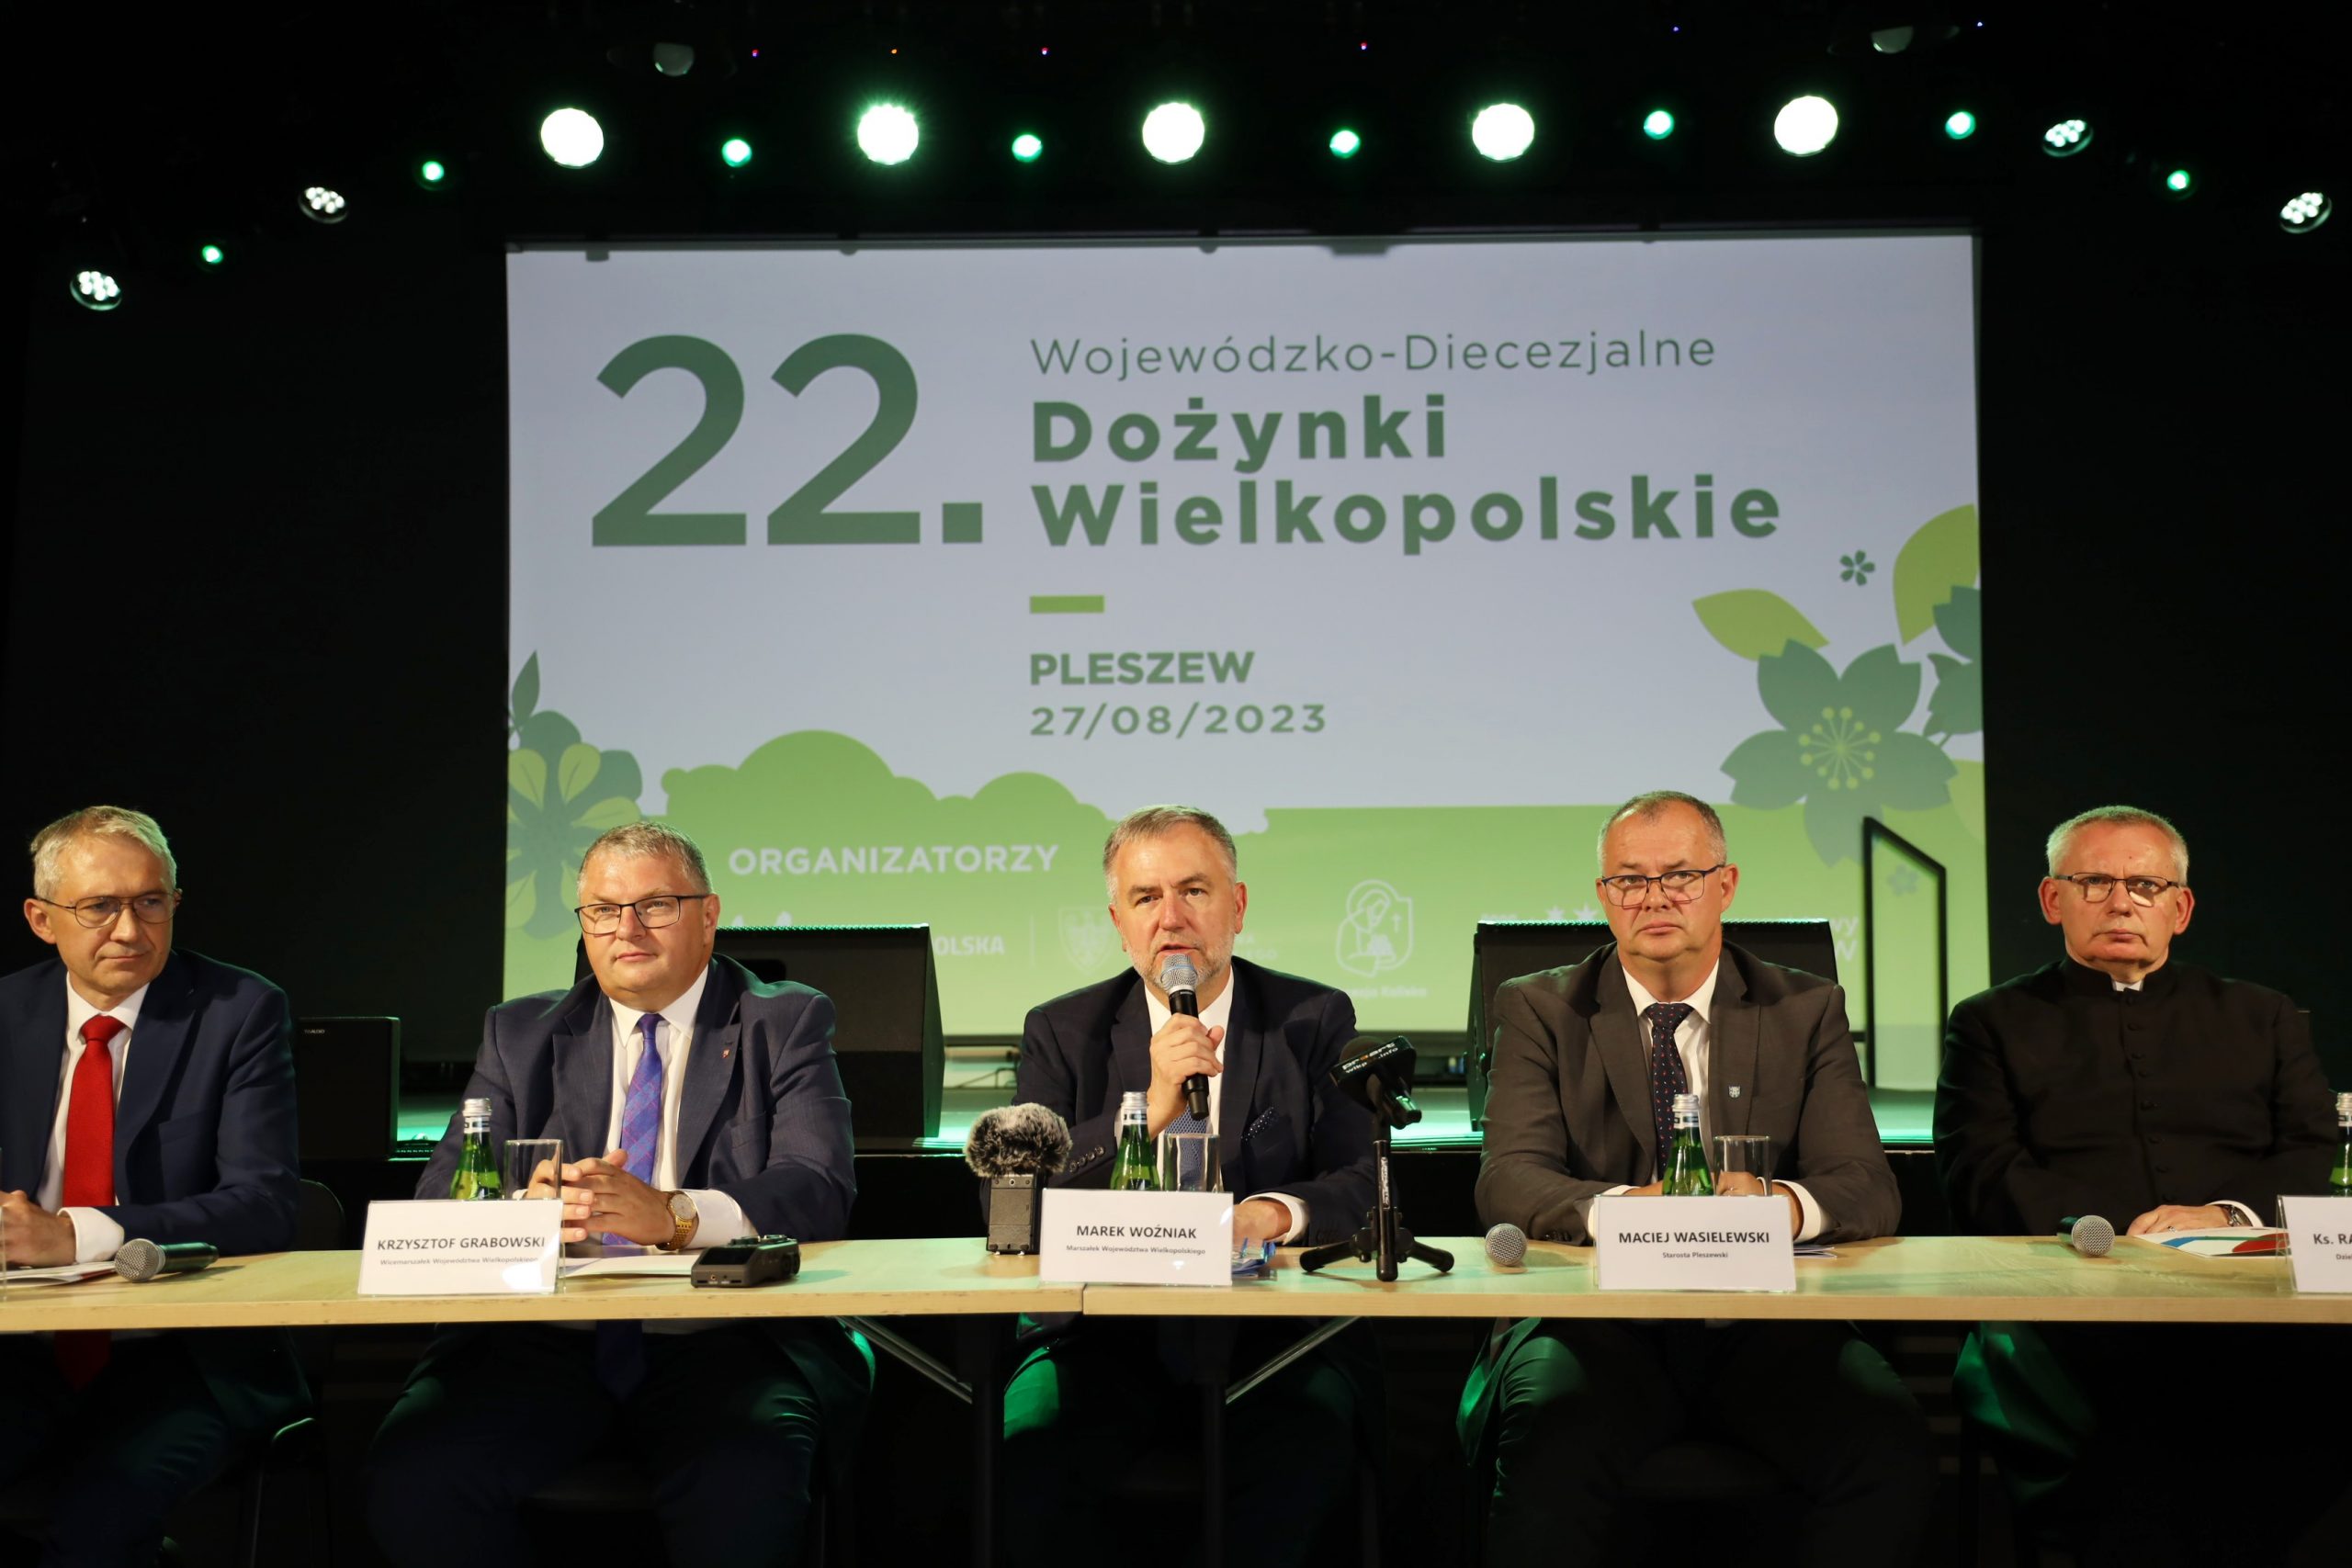 22. Wojewódzko-Diecezjalne Dożynki Wielkopolskie 2023 odbędą się w Pleszewie